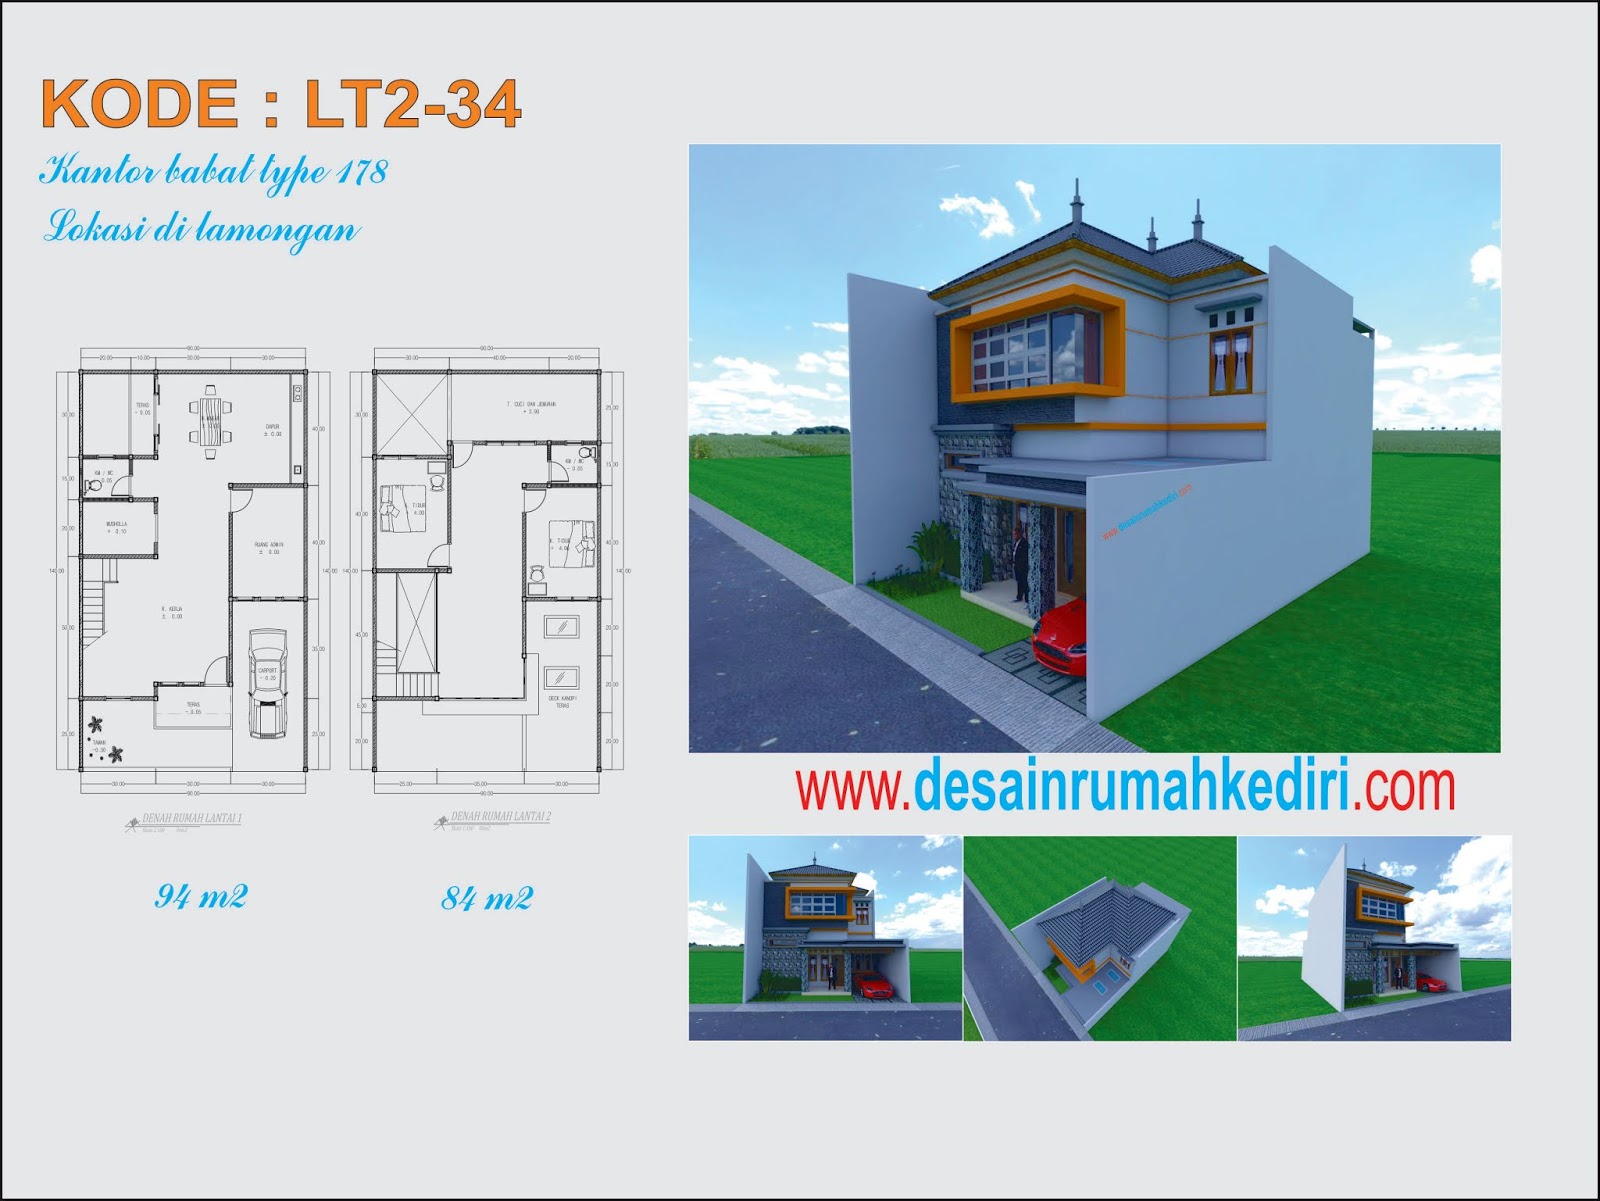 LT2 34 Rumah Kantor 2 Lantai Minimalis Di Babat Lamongan Jawa Timur Jasa Desain Rumah Terpercaya